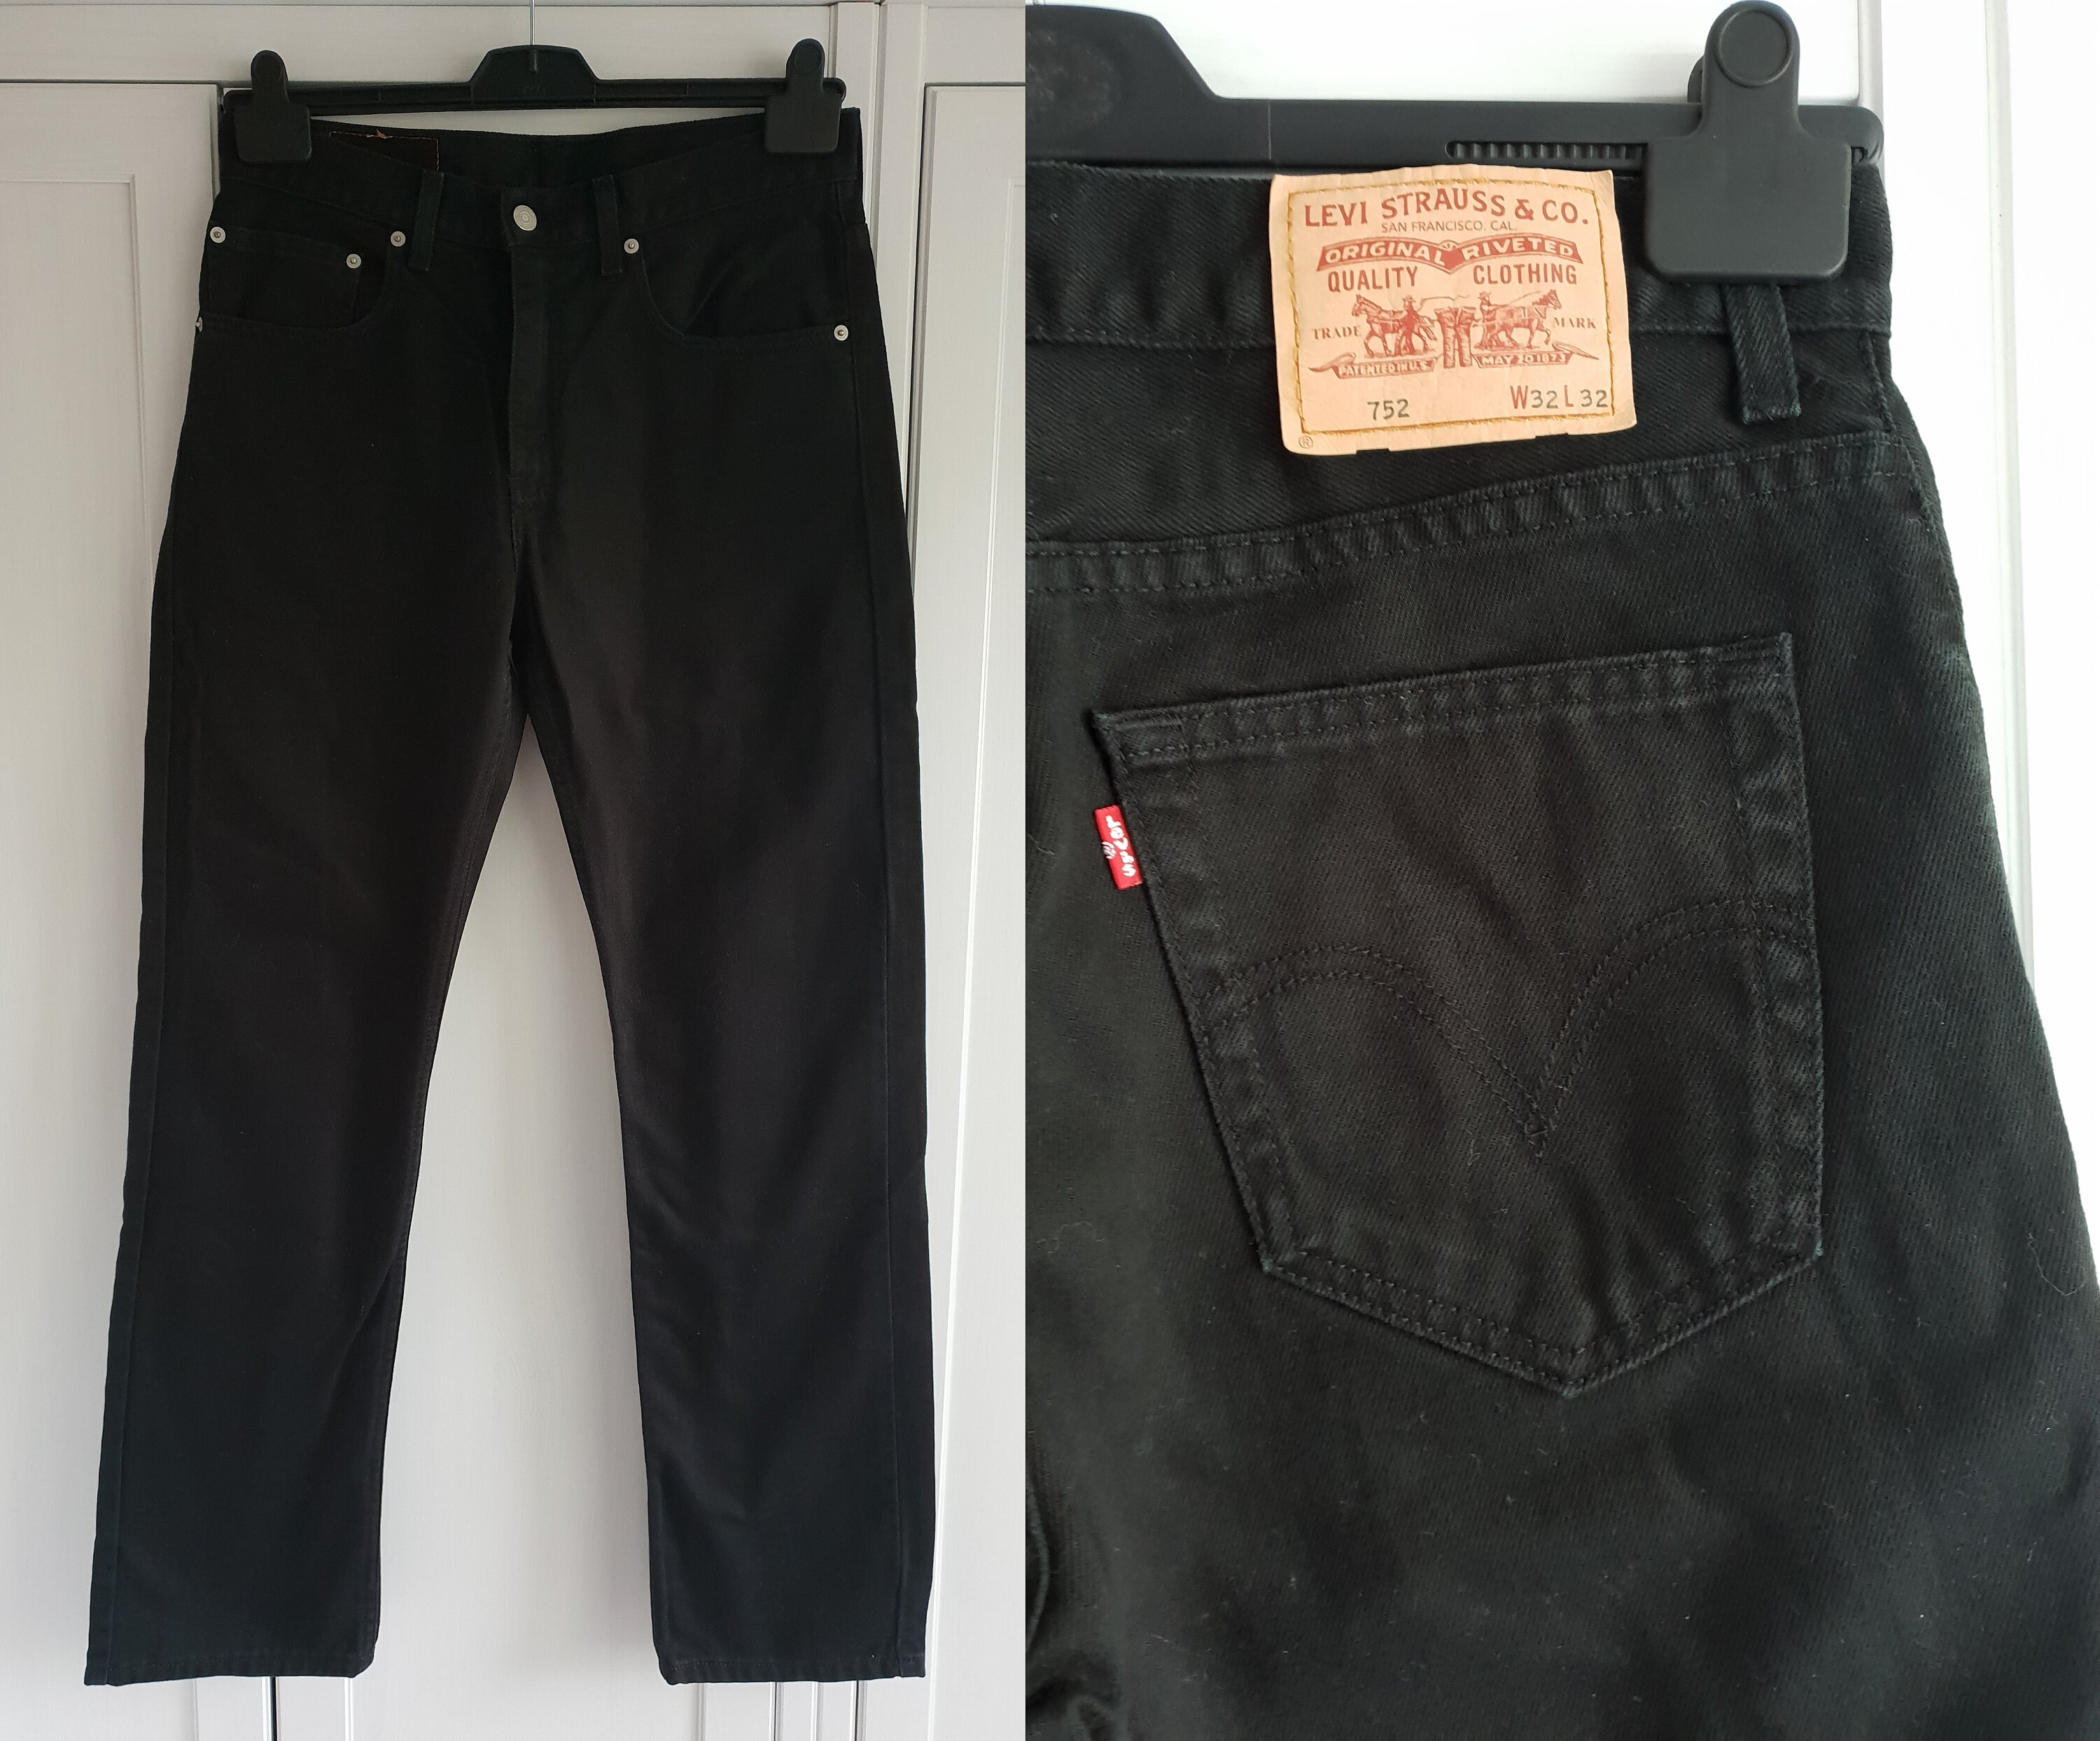 blanding Kæreste fortvivlelse Vintage Levis 752 Jeans Black Denim High Waist Jeans - Etsy